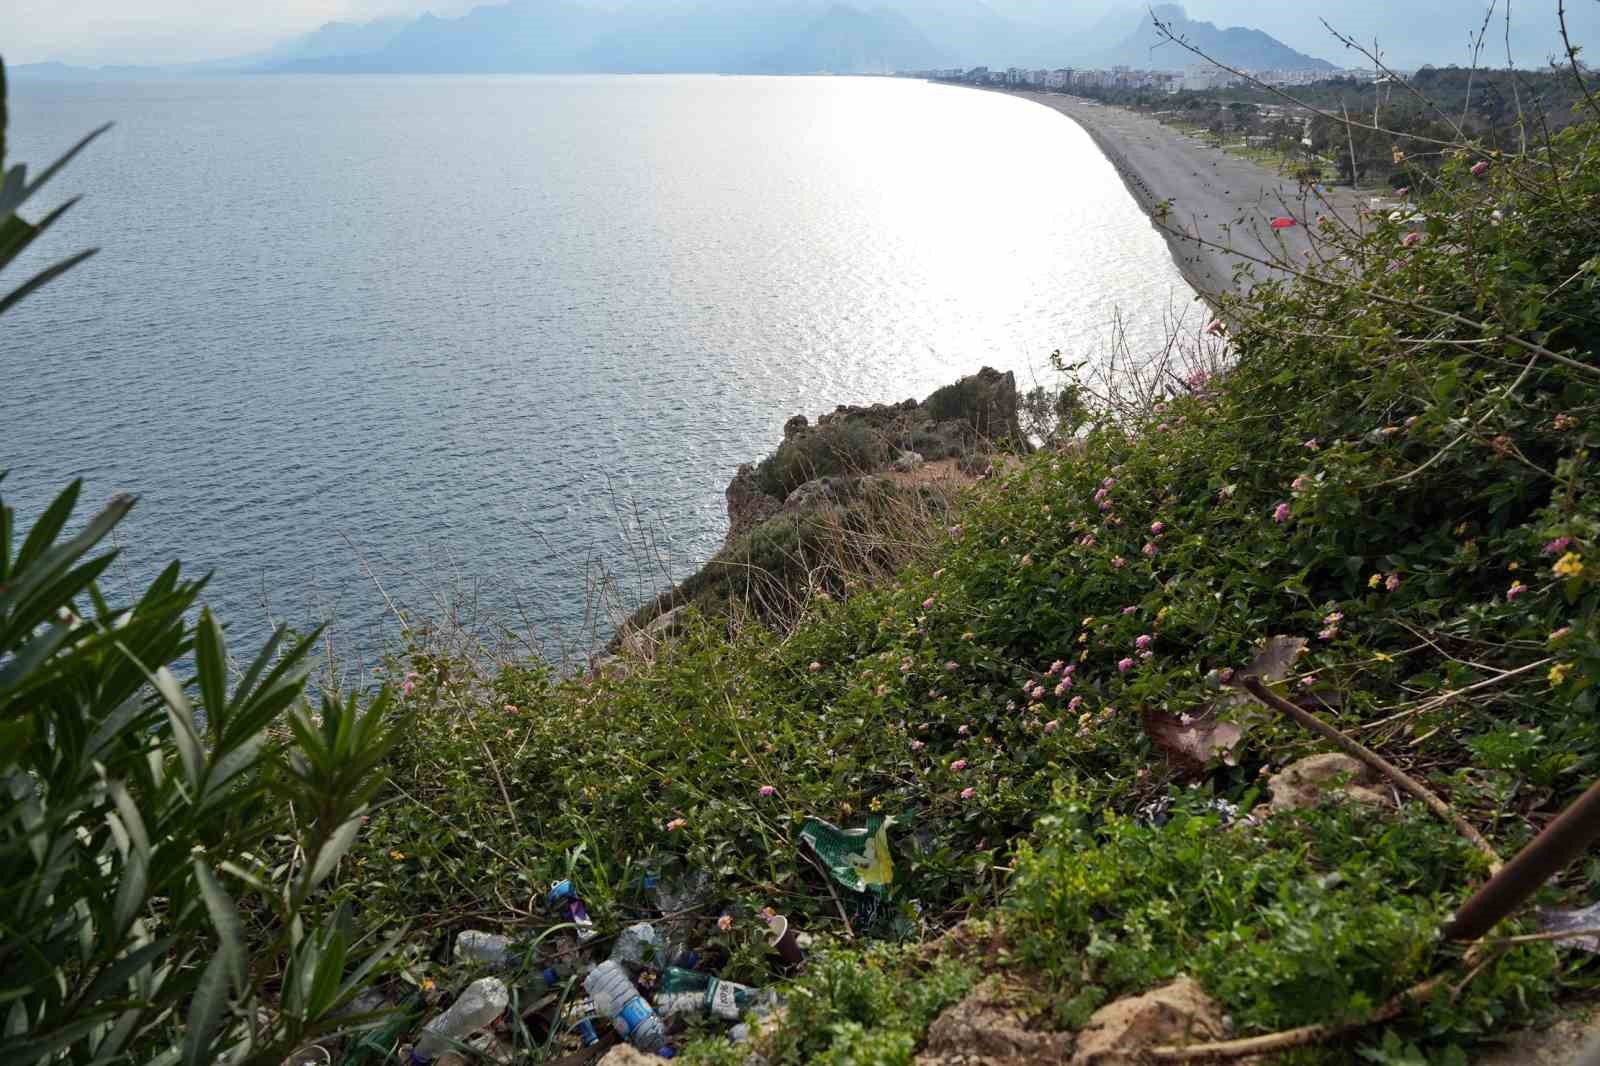 Dünyaca ünlü sahili kuşbakışı gören seyir alanındaki çöpler profesörü çileden çıkardı